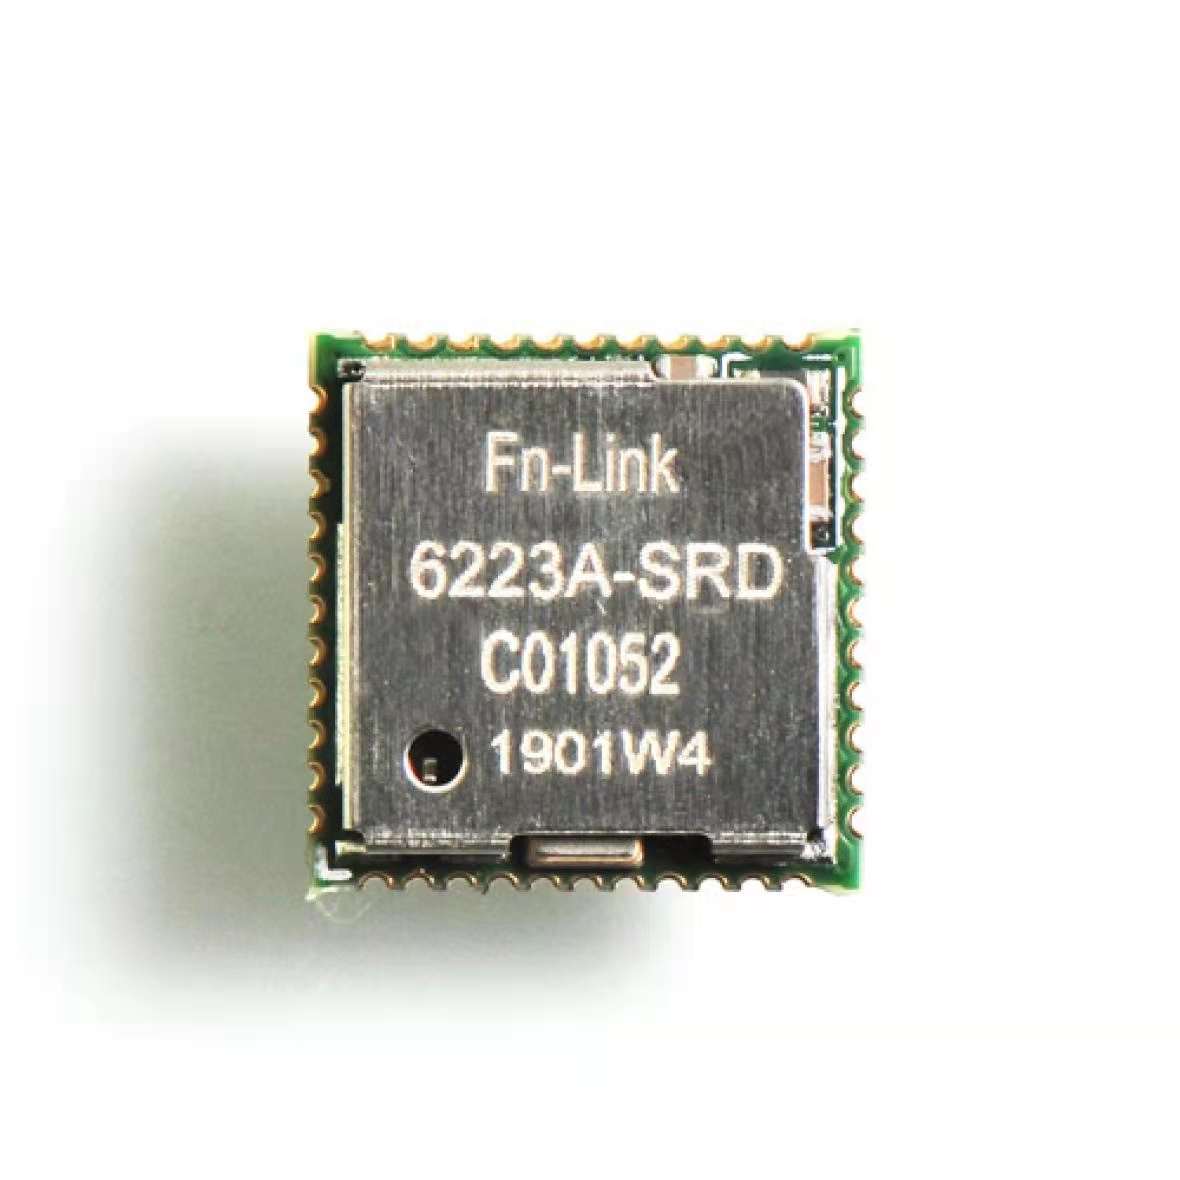 Module Wi-Fi 6223A-SRD